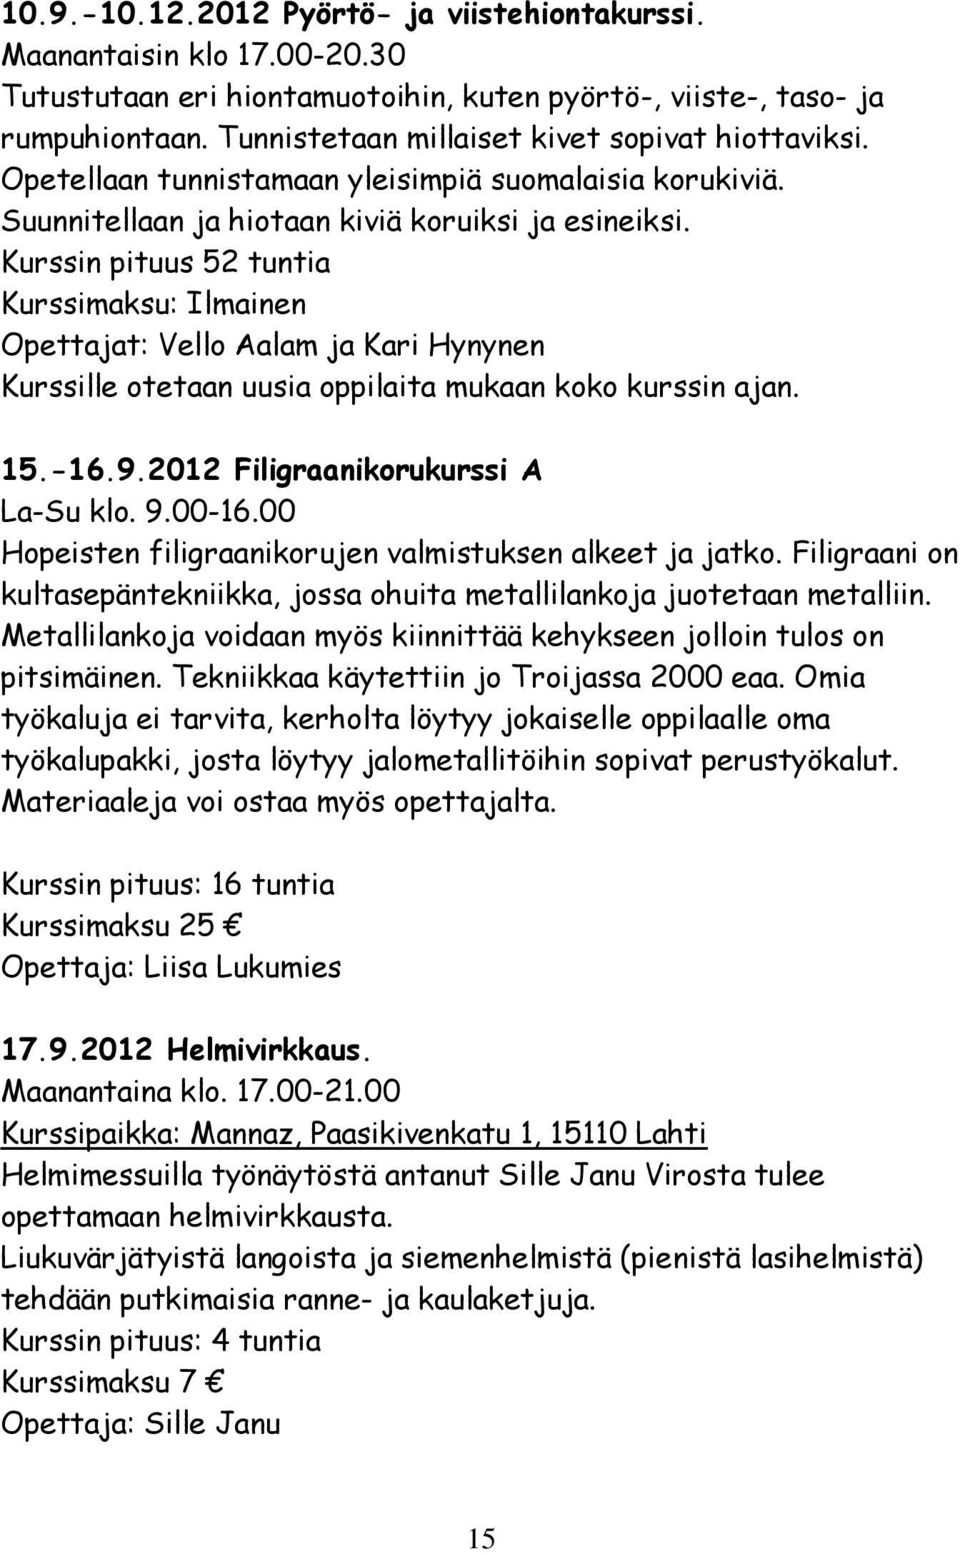 Kurssin pituus 52 tuntia Kurssimaksu: Ilmainen Opettajat: Vello Aalam ja Kari Hynynen Kurssille otetaan uusia oppilaita mukaan koko kurssin ajan. 15.-16.9.2012 Filigraanikorukurssi A La-Su klo. 9.